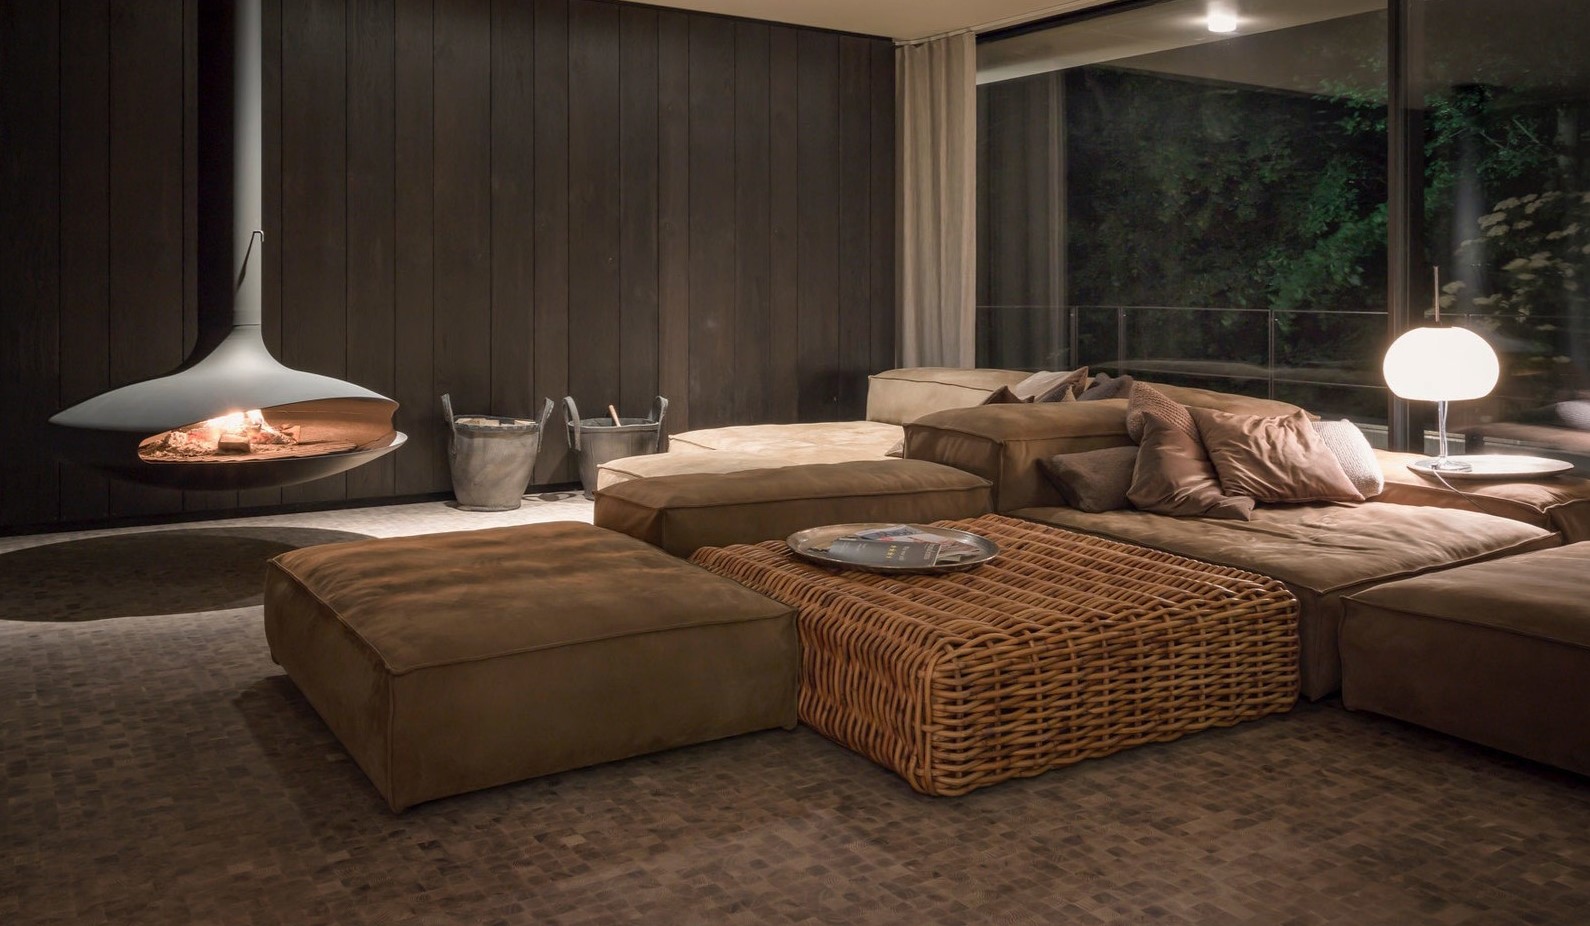 Модульный диван идеально подходит для современного интерьера гостиной